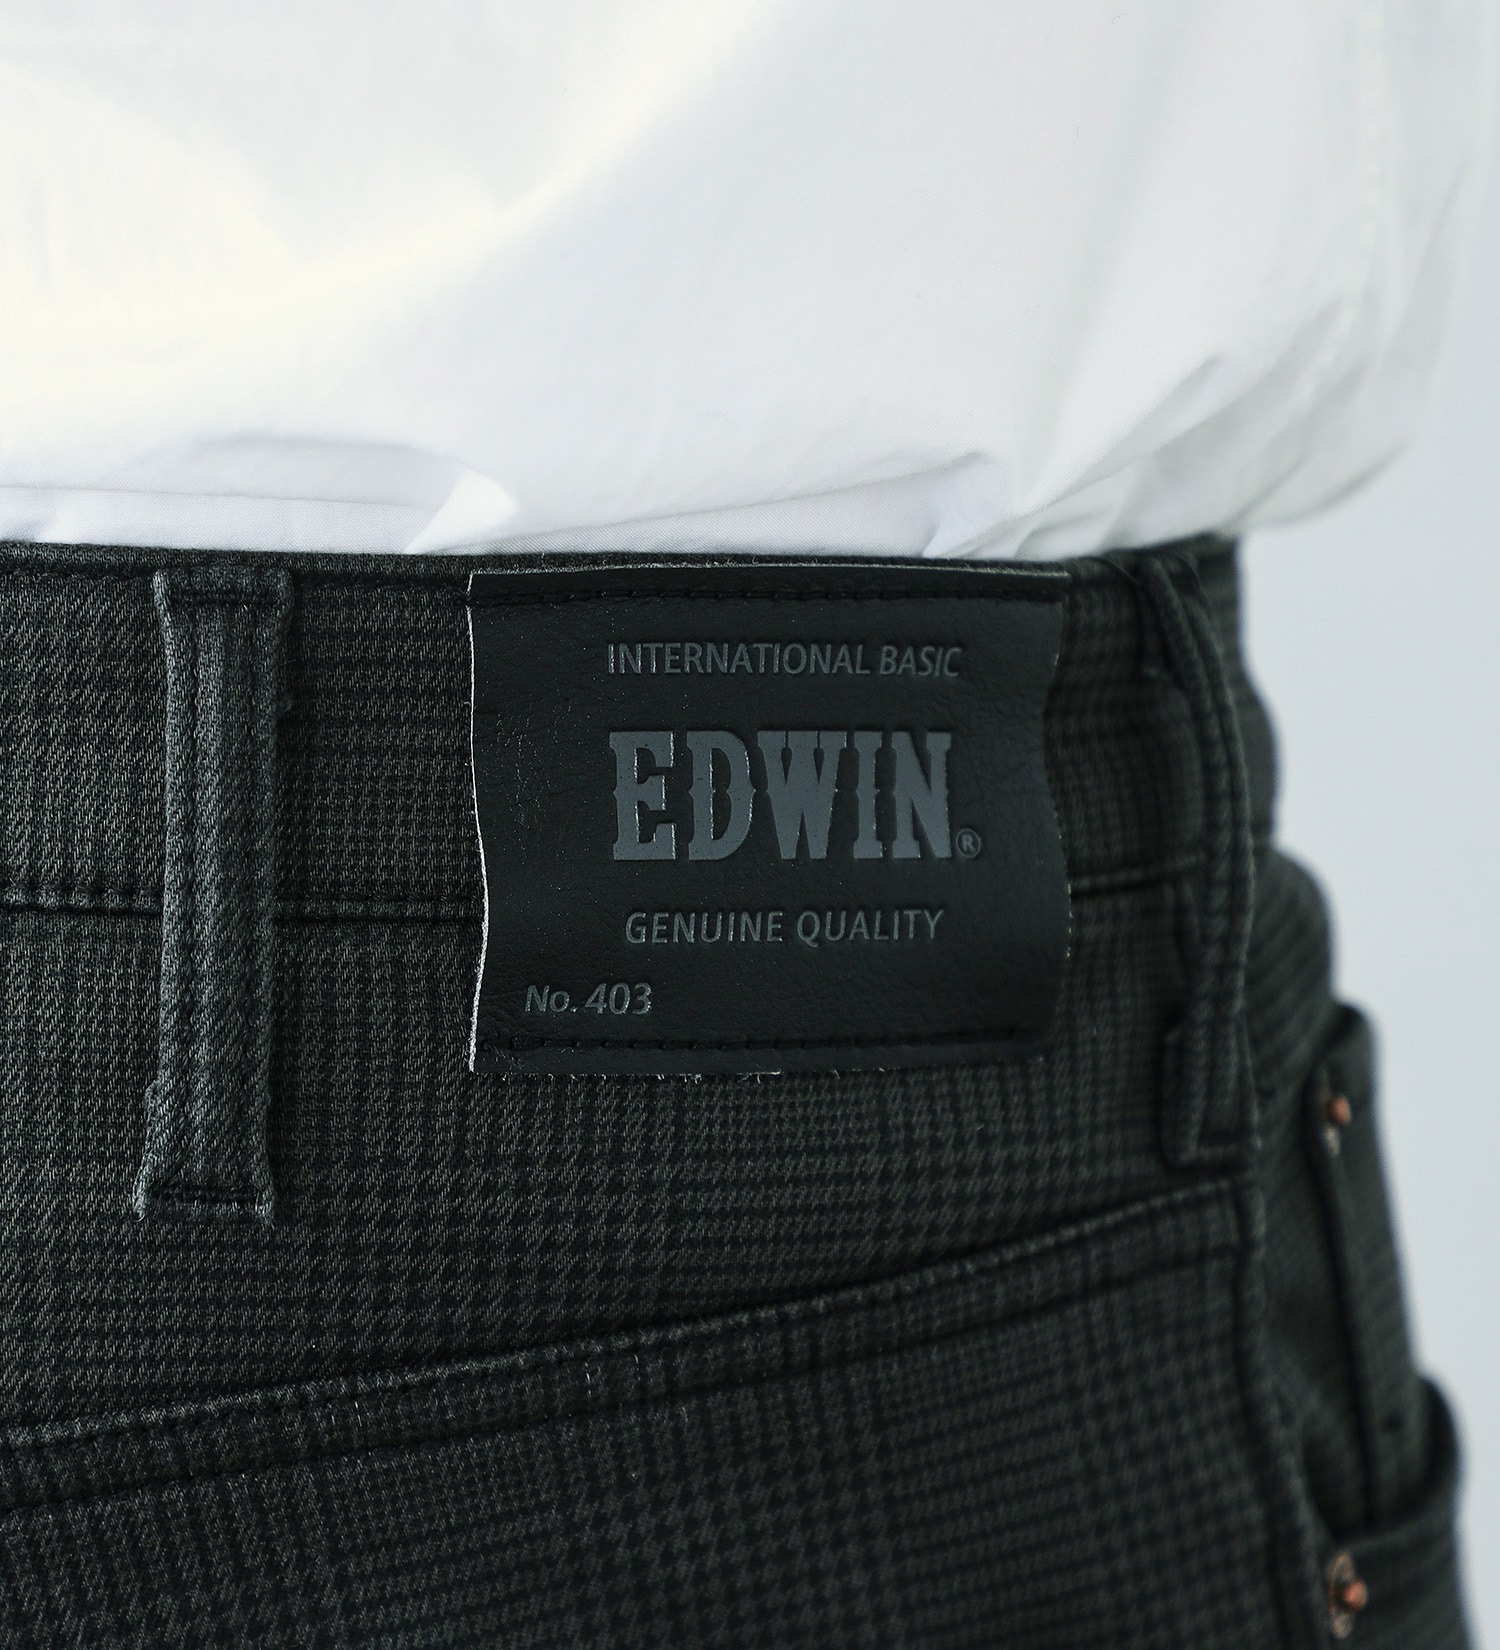 EDWIN(エドウイン)の【先行SALE】【大きいサイズ】2層で暖かい EDWIN インターナショナルベーシック レギュラーストレートパンツ403 WILD FIRE 2層ボンディング構造 【暖】|パンツ/パンツ/メンズ|チェック